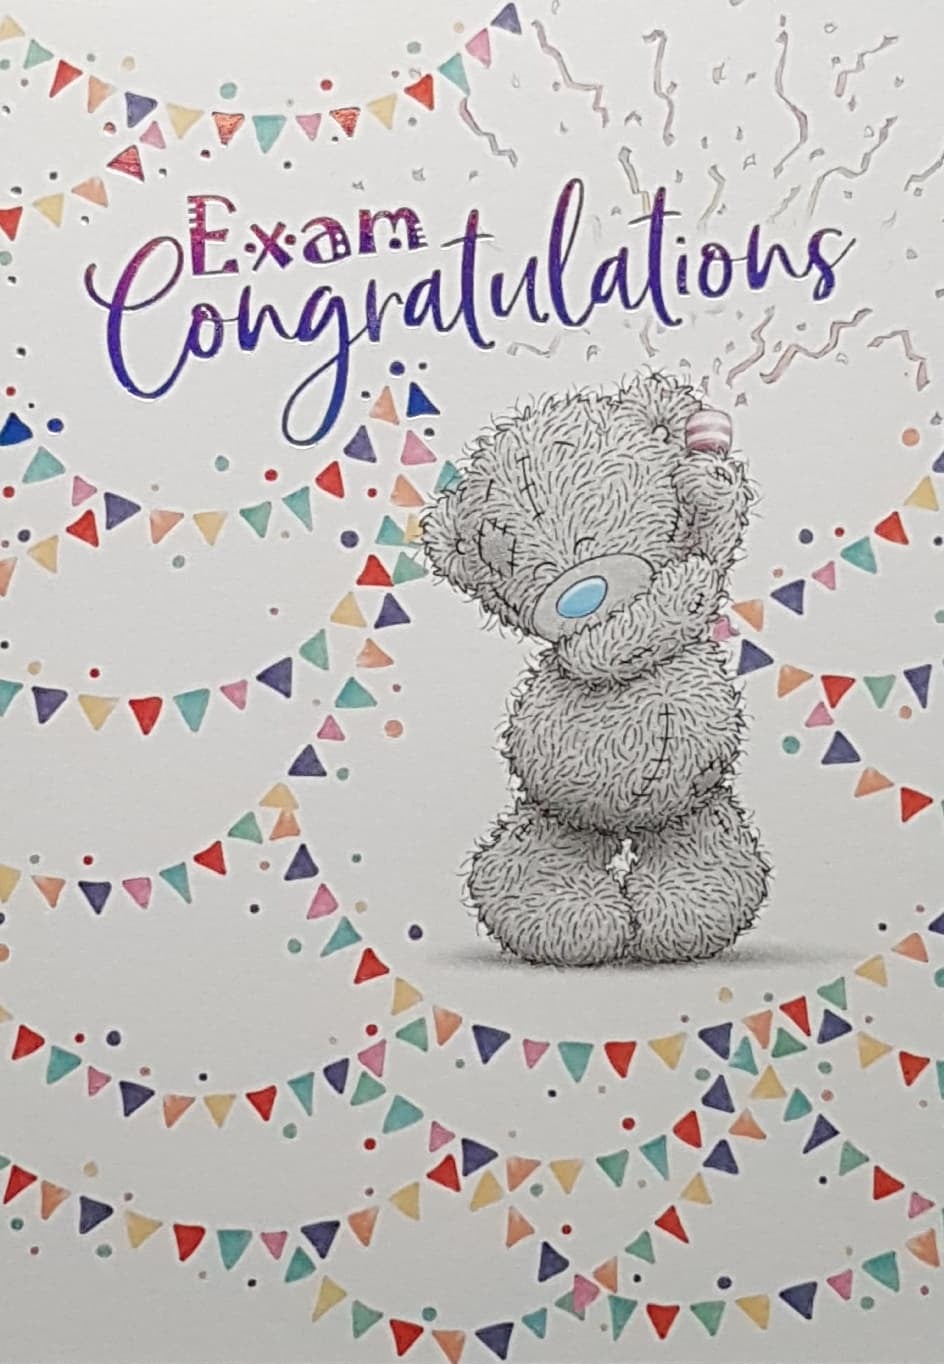 Congratulations Card - Exam Congratulations & Multicolored Bunting